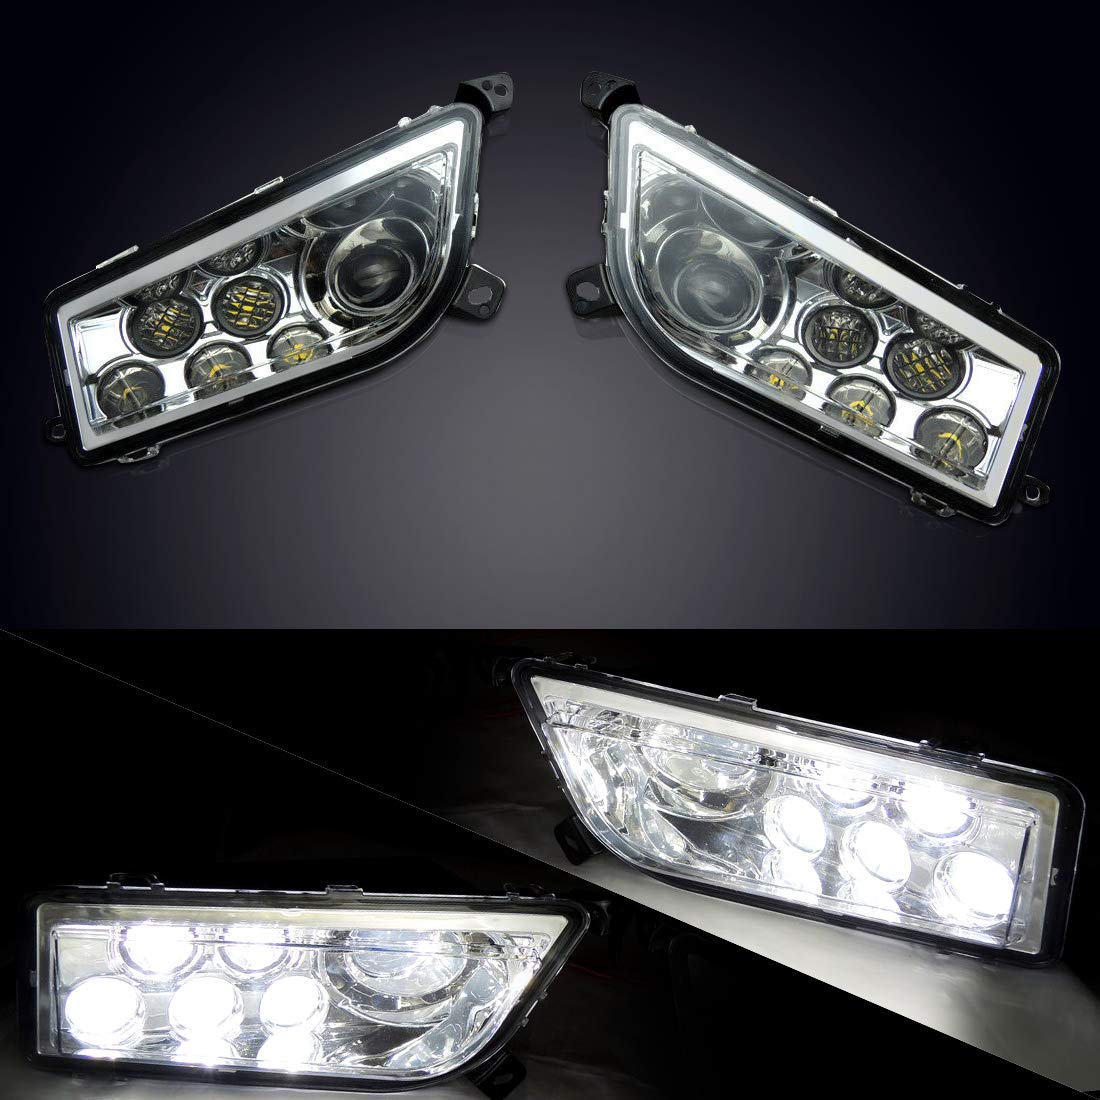 Pair of LED Headlight Fit RZR XP 1000/4 1000, XP Turbo/Turbo S / 4 turbo, 900 / S 900 (2014-2022) - Kemimoto